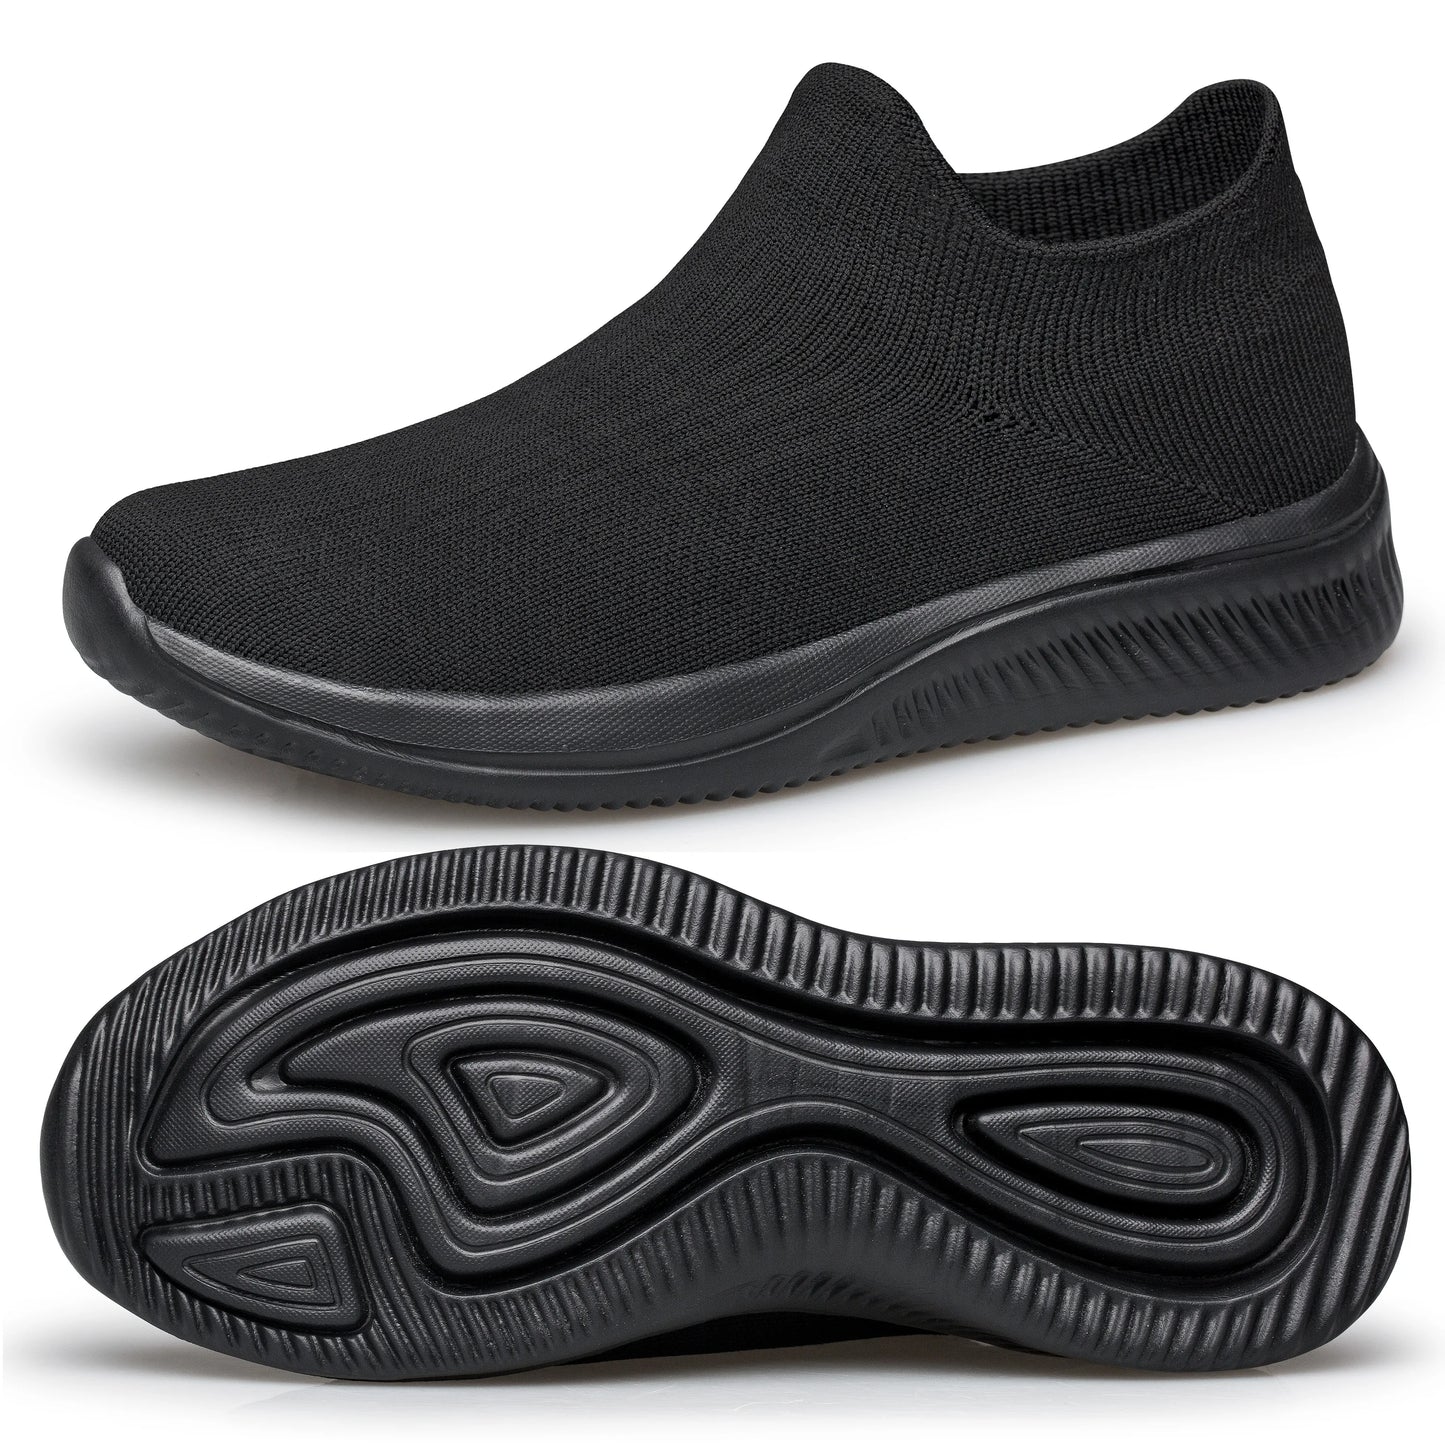 Herren-Sock-Sneaker – leichte, atmungsaktive Schuhe